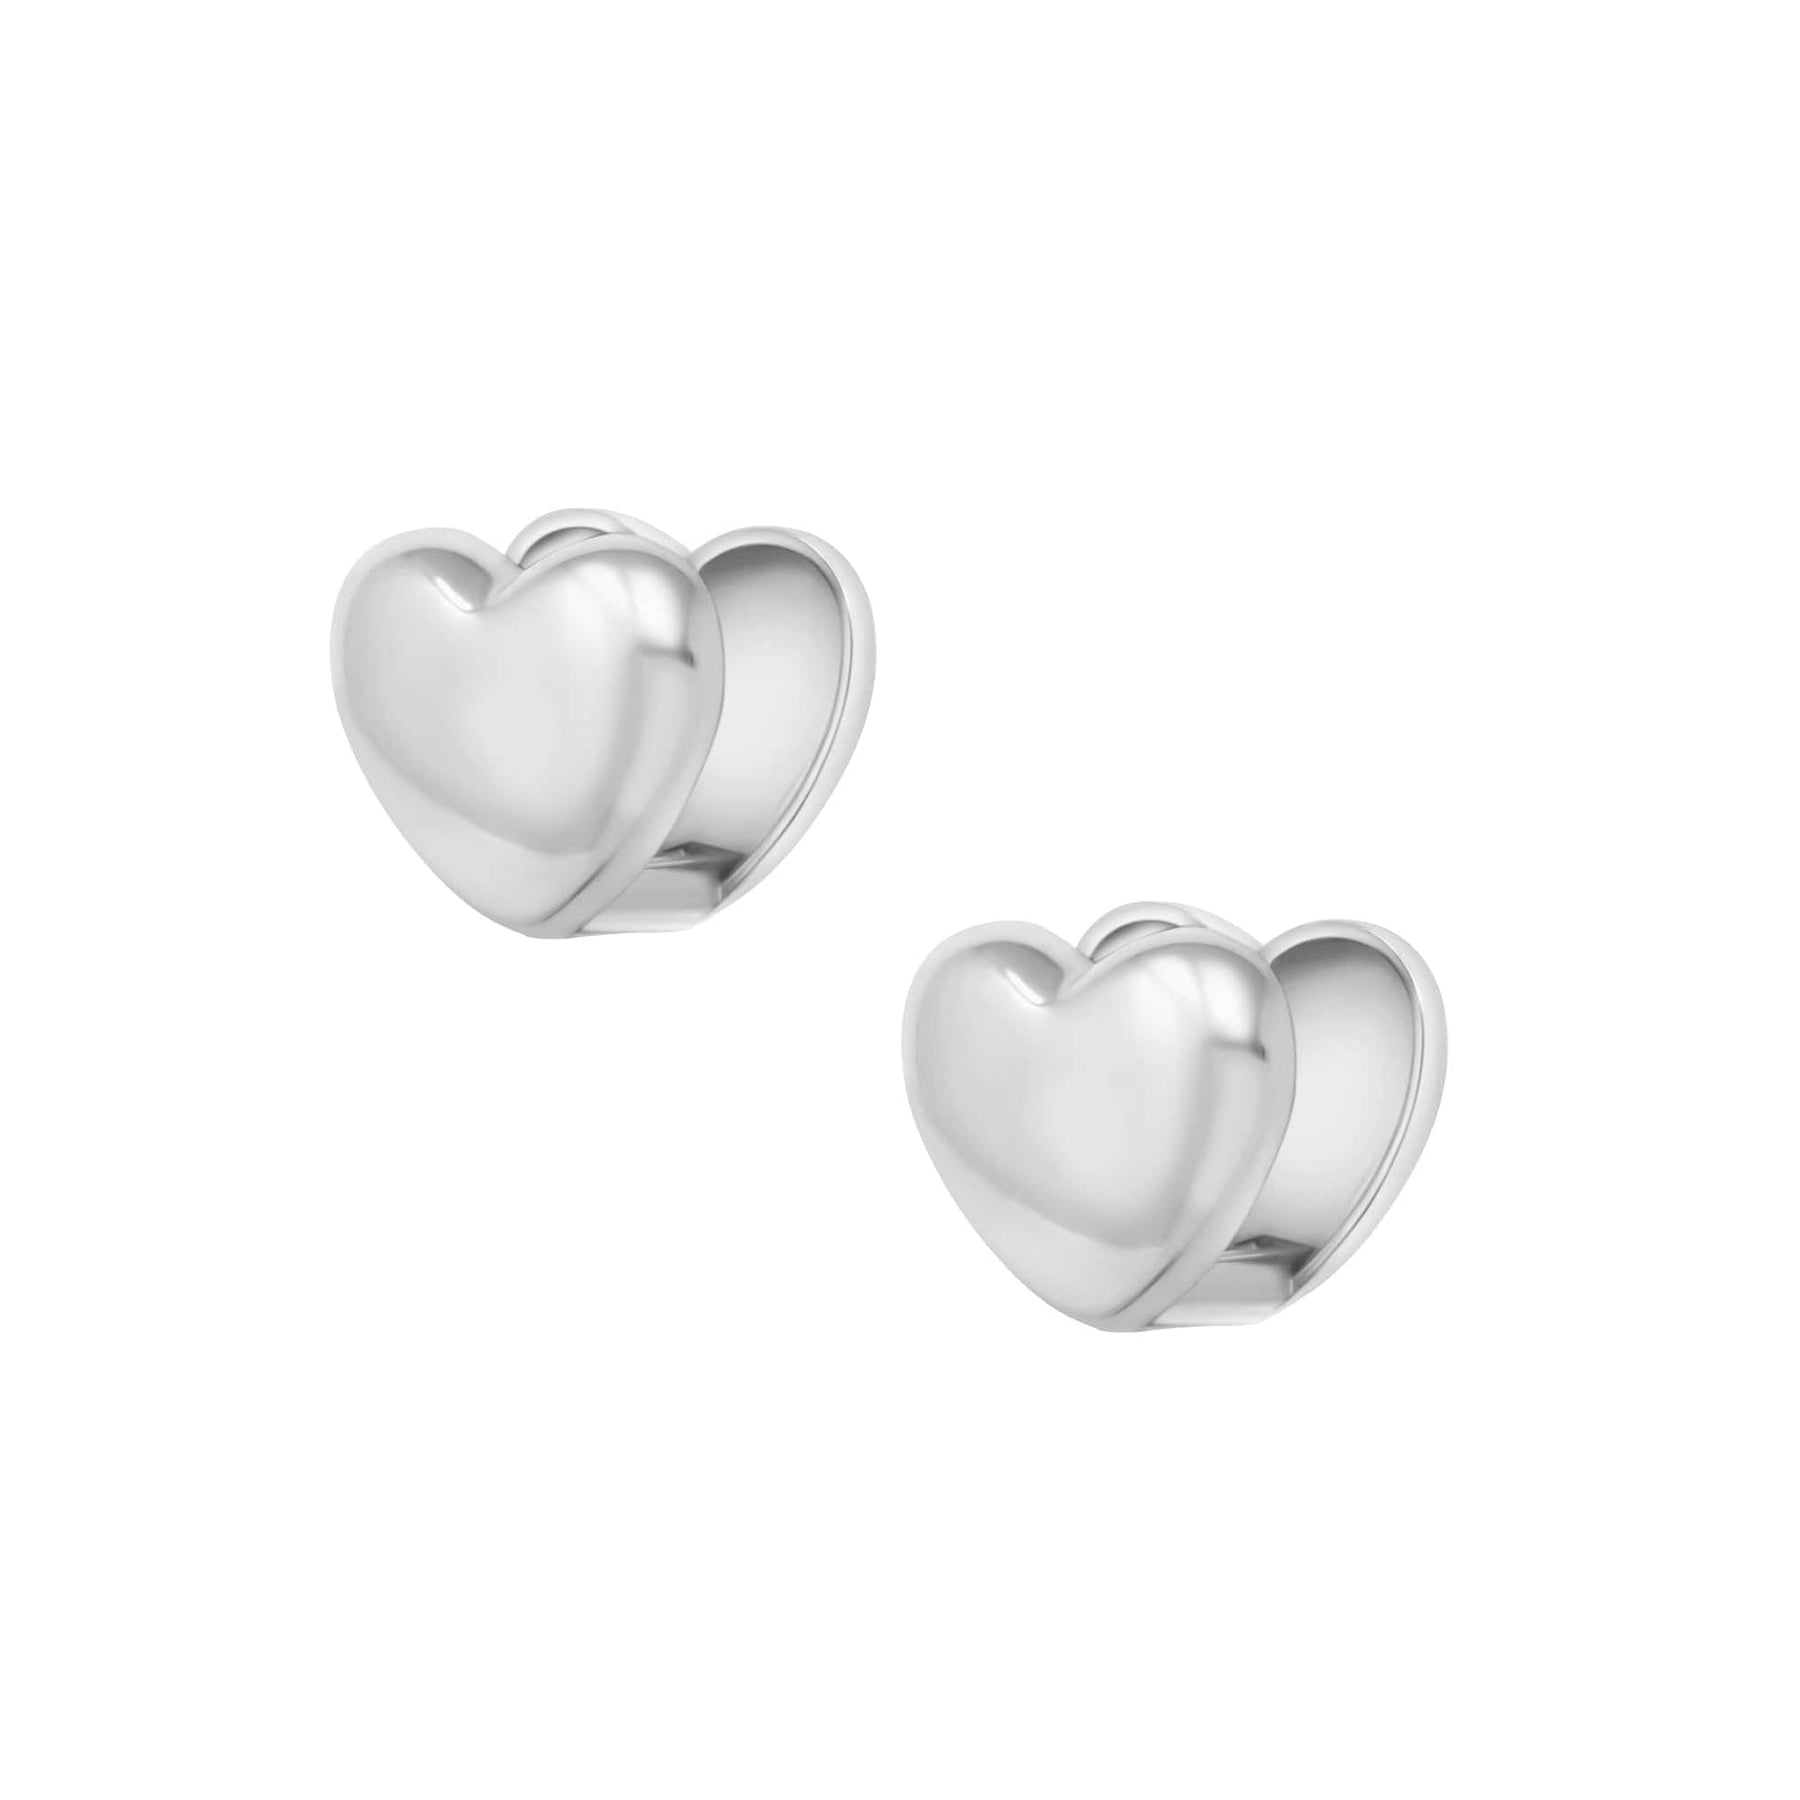 BohoMoon Stainless Steel Lovebug Stud Earrings Silver